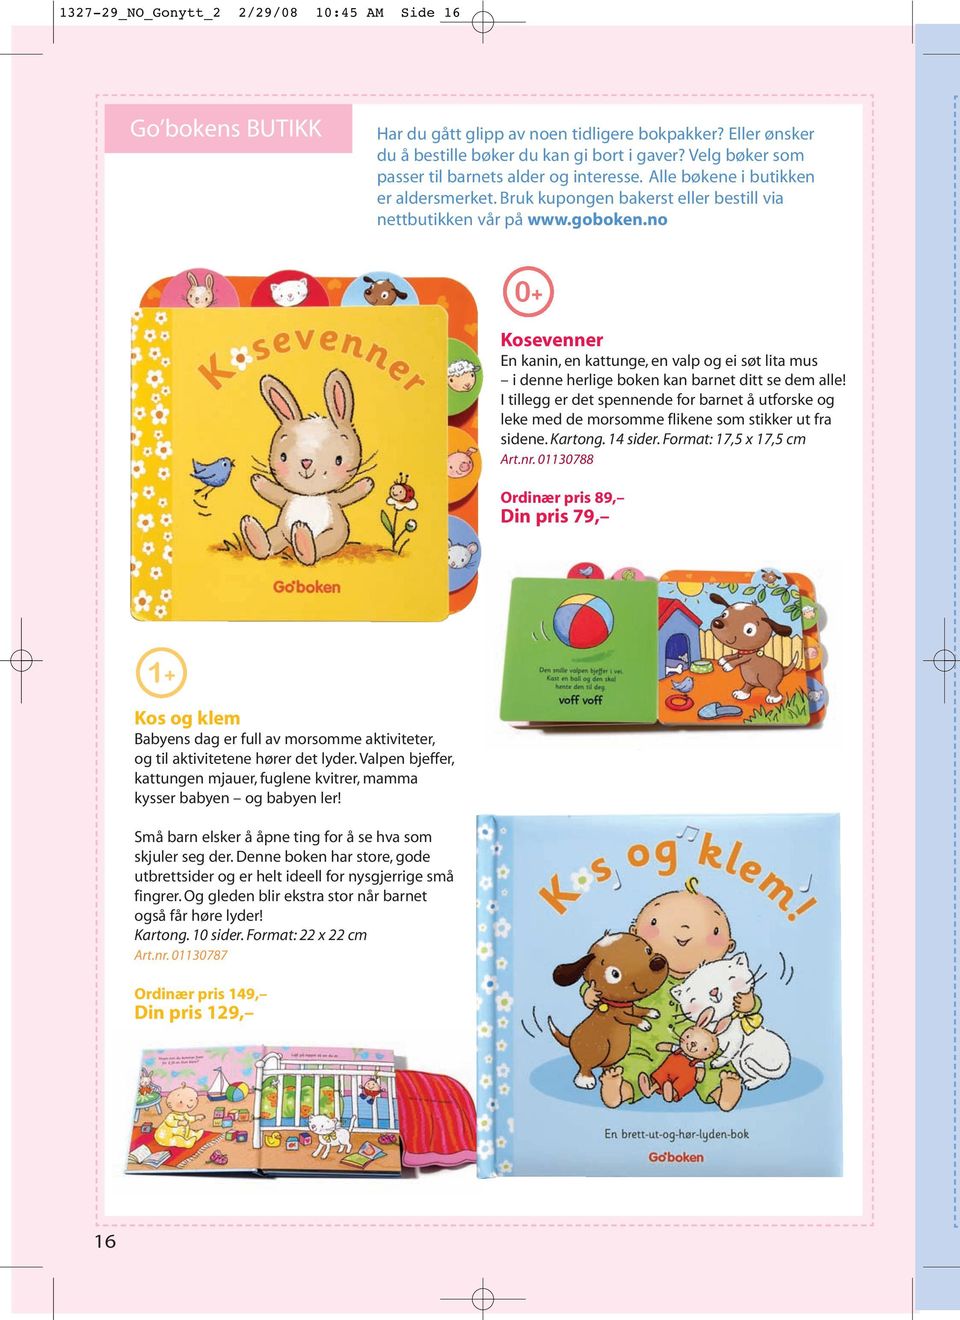 no 0+ Kosevenner En kanin, en kattunge, en valp og ei søt lita mus i denne herlige boken kan barnet ditt se dem alle!